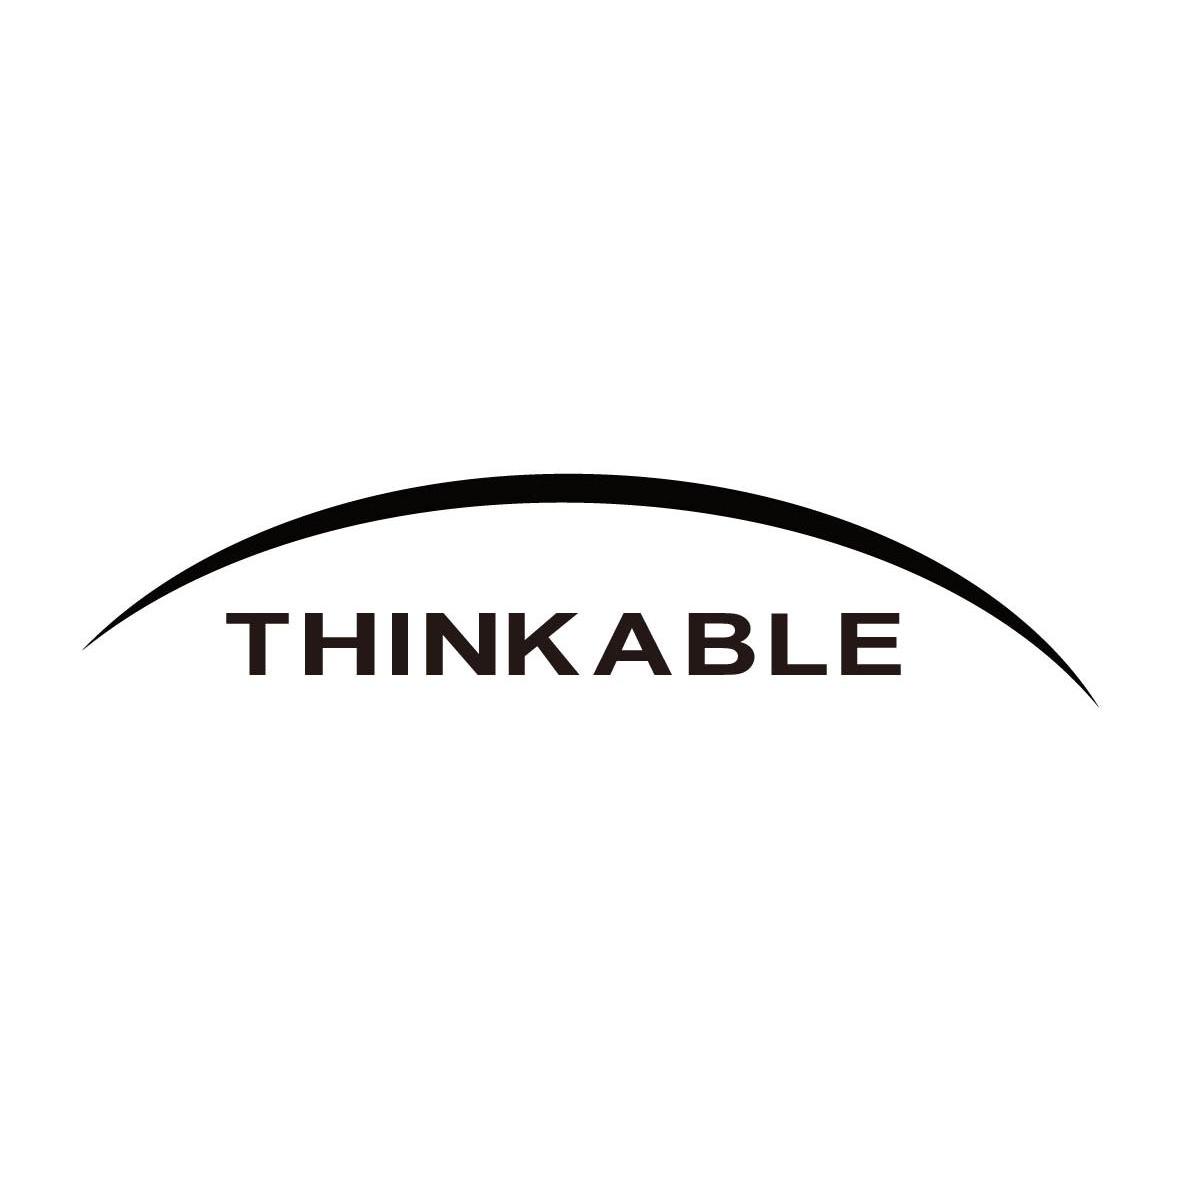  em>thinkable /em>